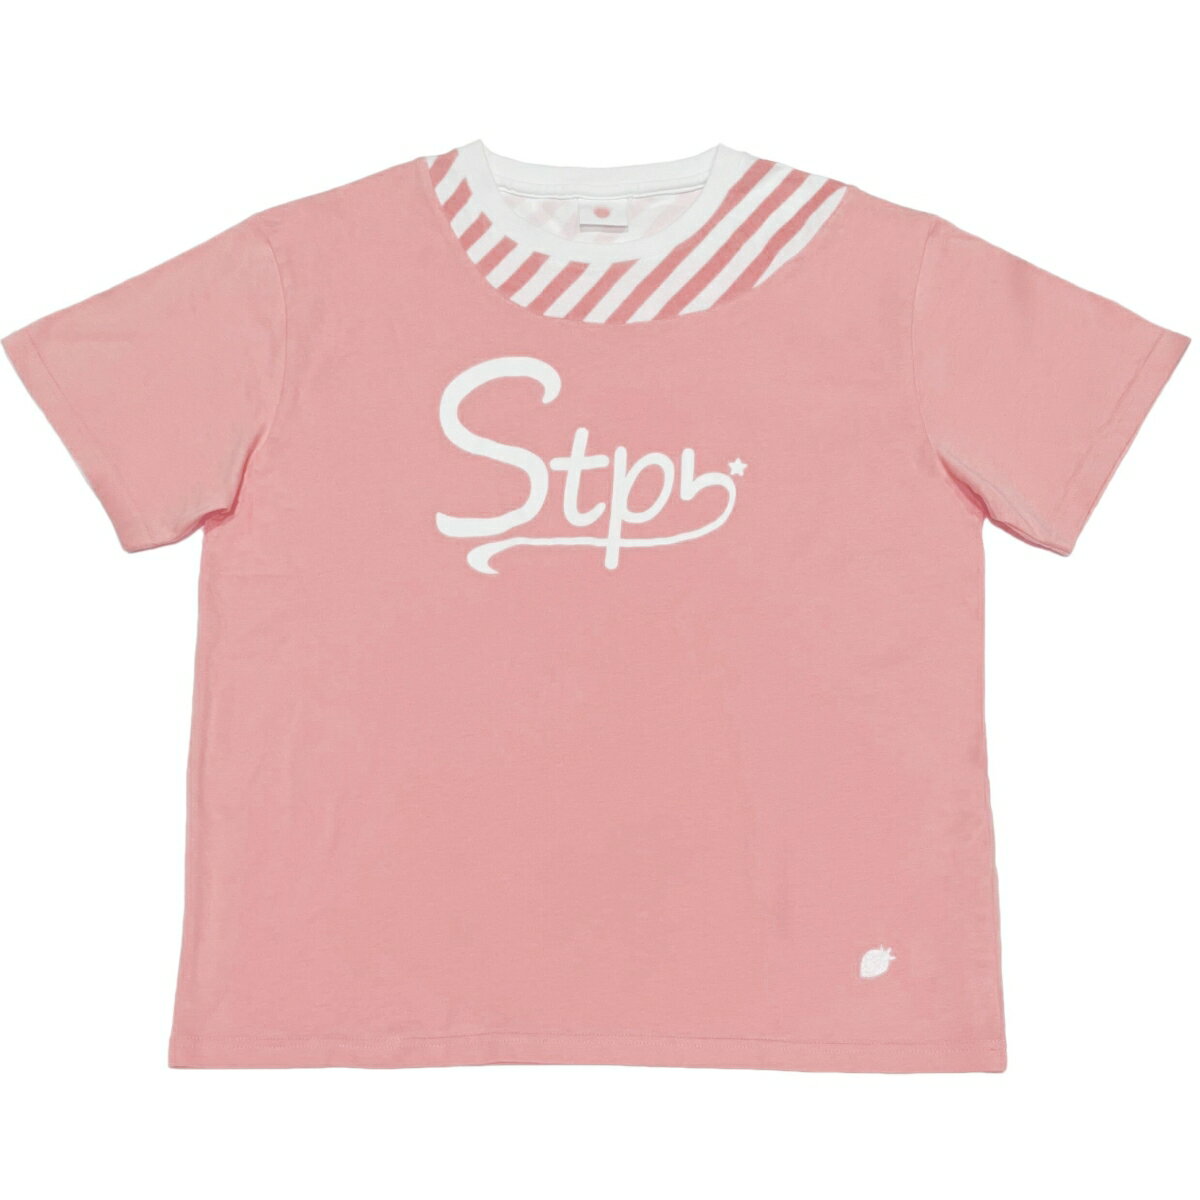 【公式グッズ】STPR レイヤードTシャツ(さとみ)